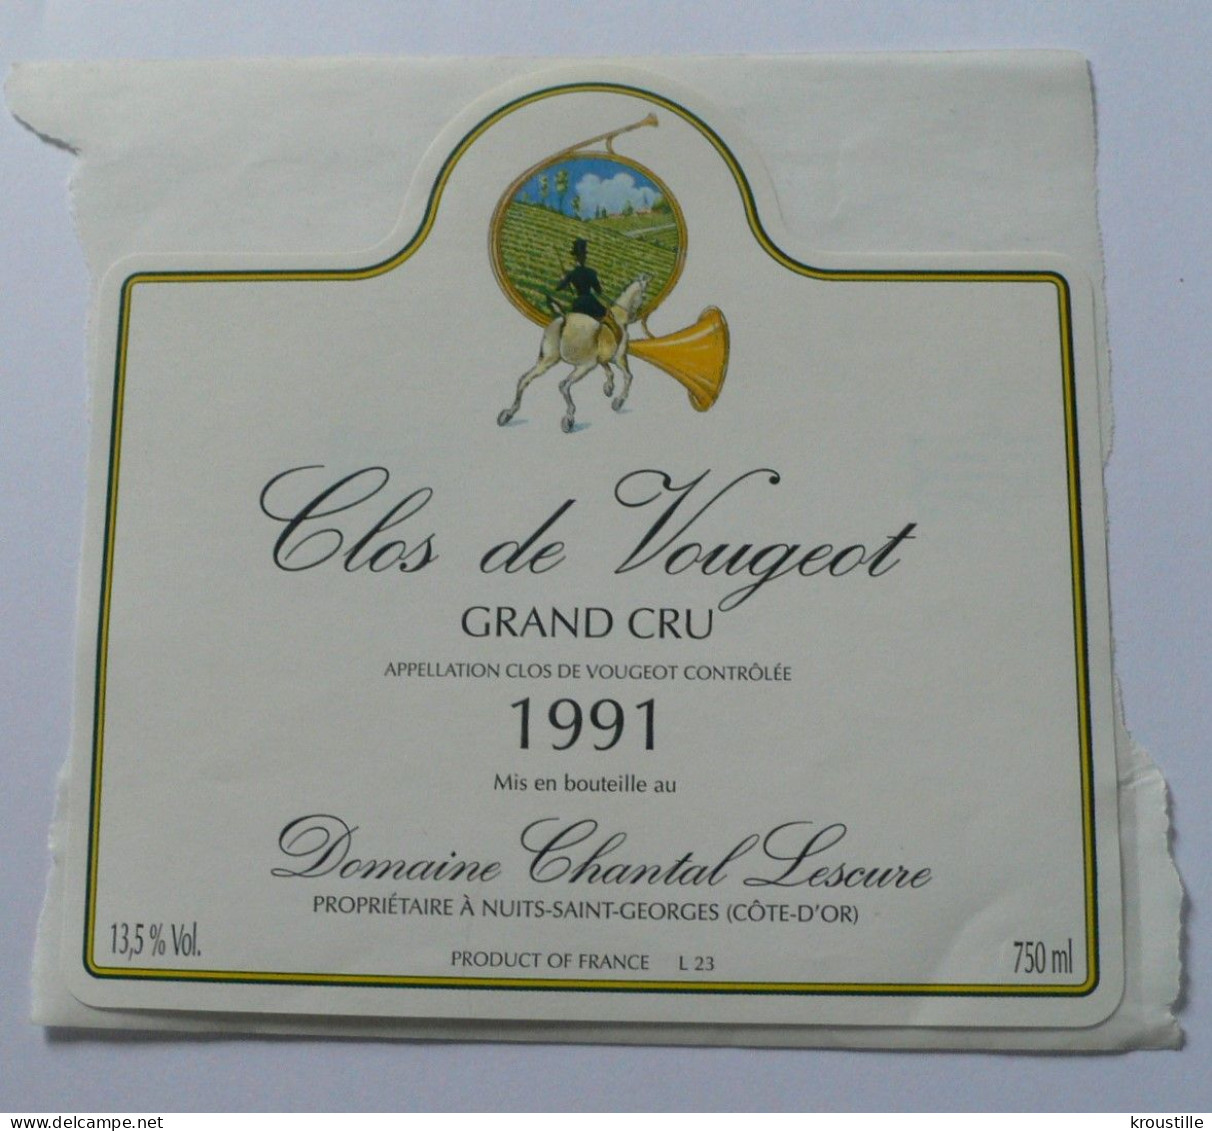 CLOS DE VOUGEOT - GRAND CRU 1991 - ETIQUETTE NEUVE - THEME CHASSE - Jacht